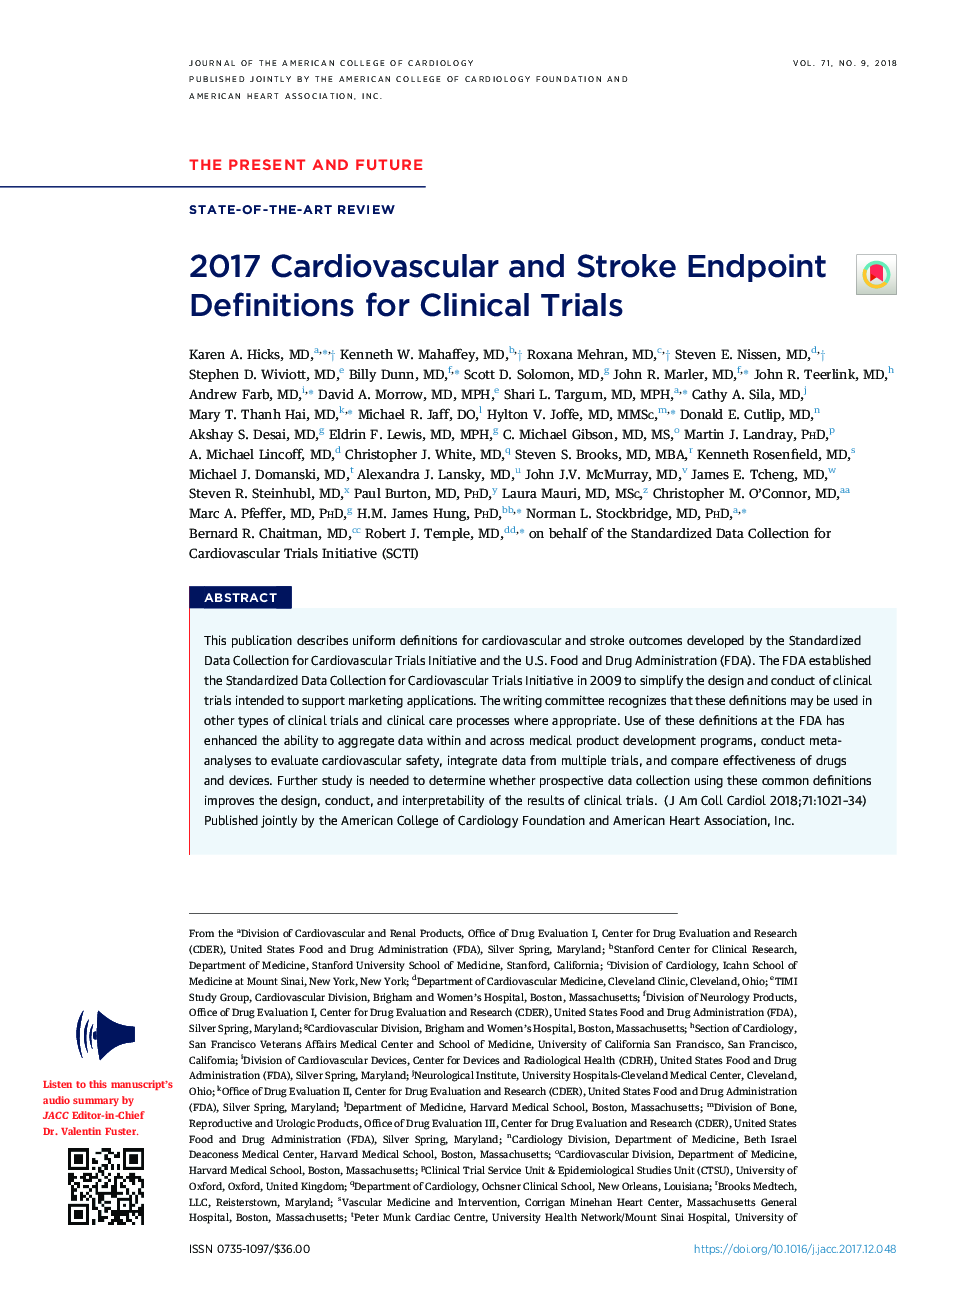 2017 تعاریف پایایی قلبی عروقی و سکته مغزی برای آزمایشات بالینی 